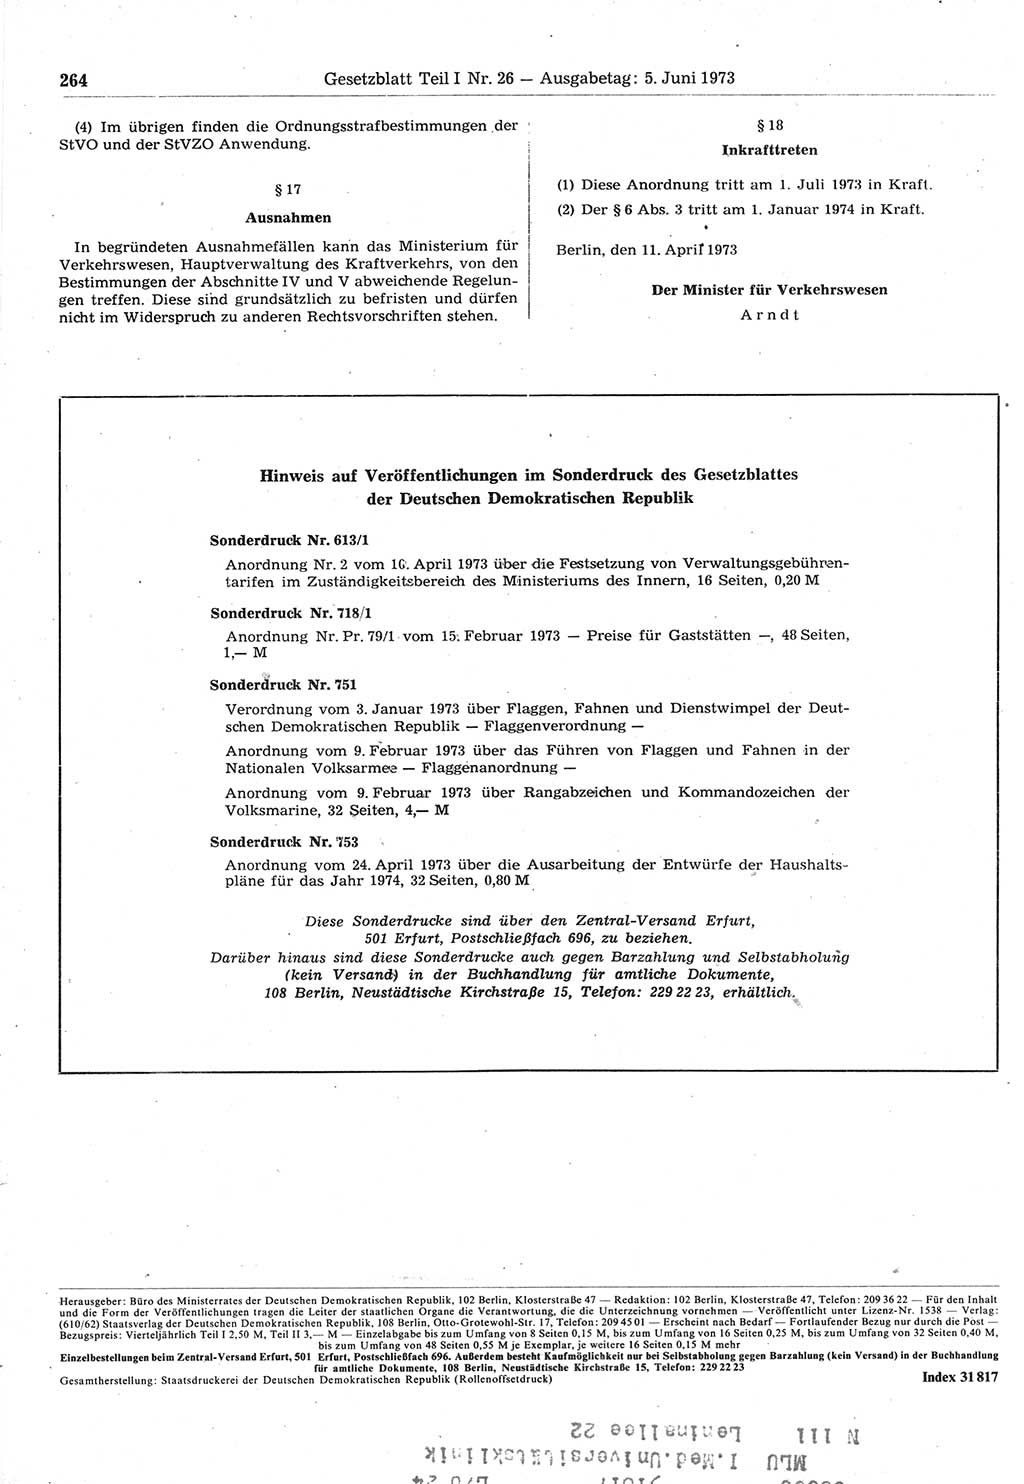 Gesetzblatt (GBl.) der Deutschen Demokratischen Republik (DDR) Teil Ⅰ 1973, Seite 264 (GBl. DDR Ⅰ 1973, S. 264)